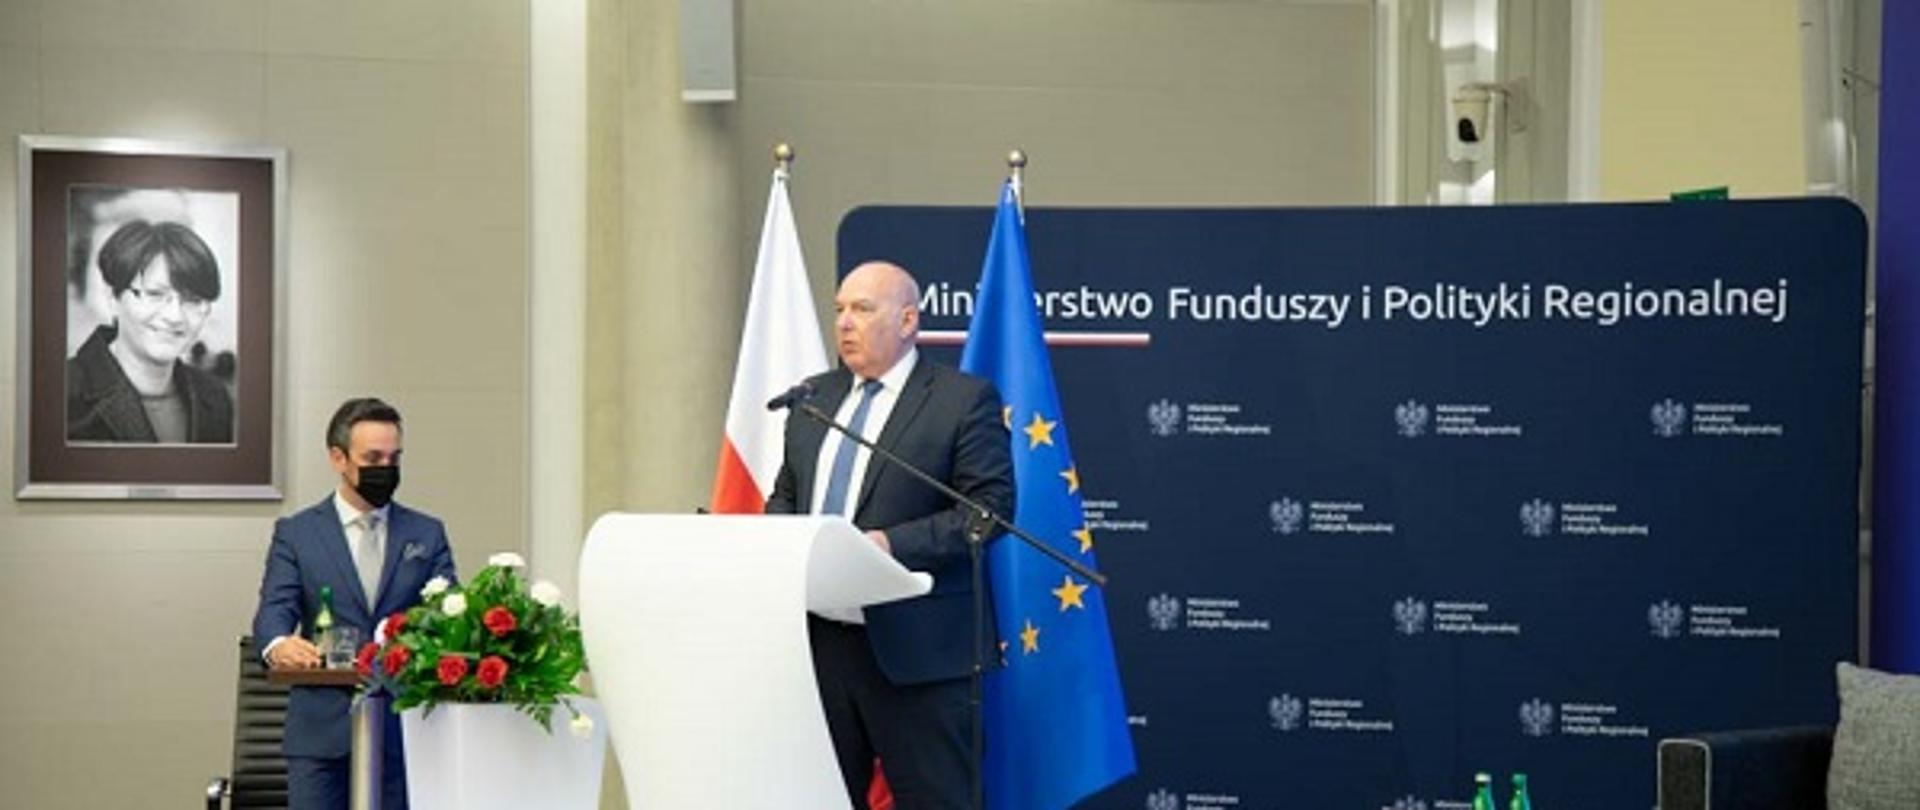 Minister Tadeusz Kościński przemawia na scenie. W tle ścianka z logo Ministerstwa Funduszy i Polityki Regionalnej